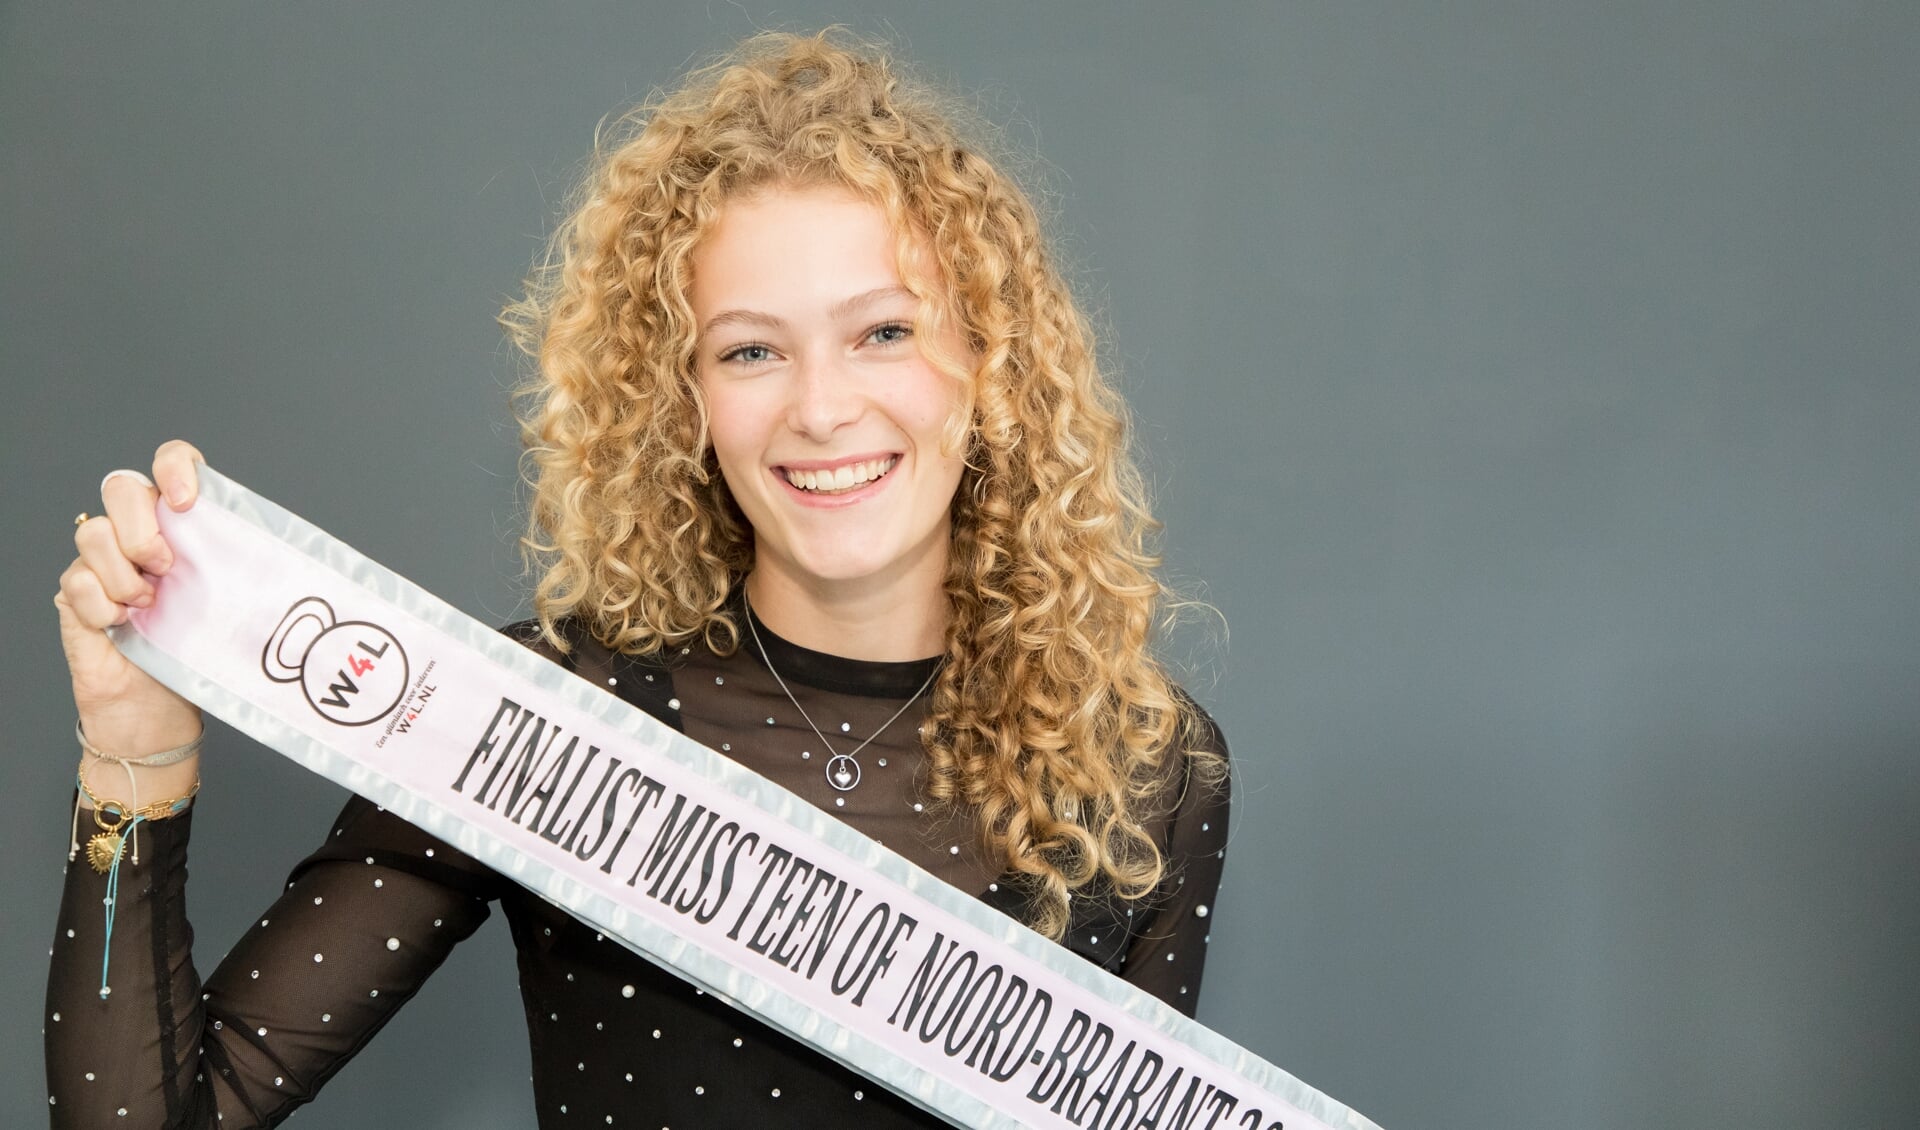 Lynn van Keulen is een finalist voor de Miss Teen of Noord-Brabant verkiezing en laat haar sjerp zien. Foto: Wiek van Lieshout.